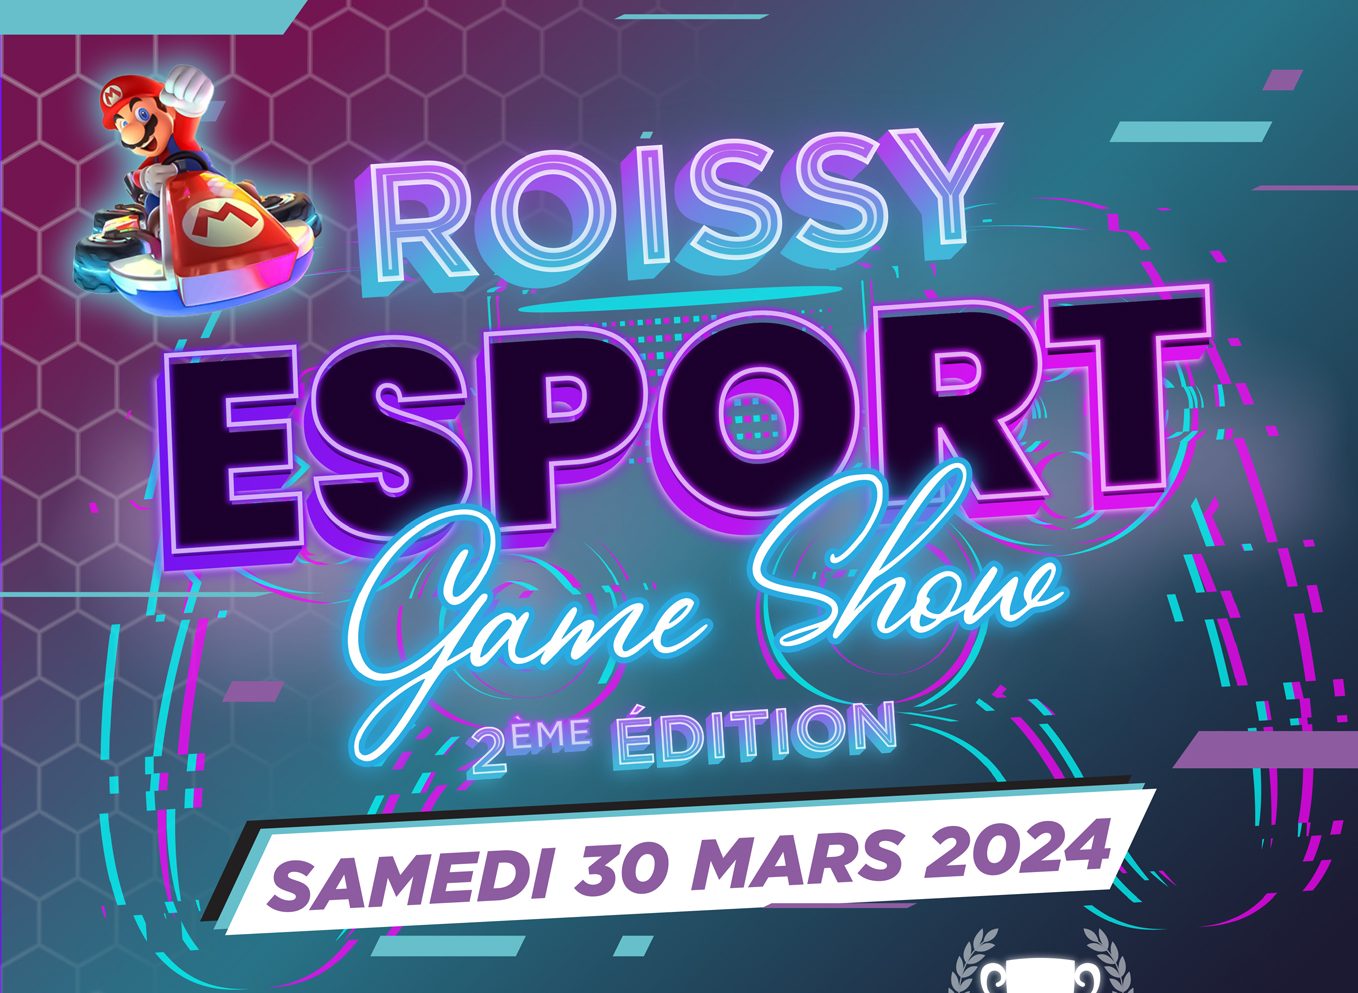 Roissy Esport Game Show retorna em 30 de março!